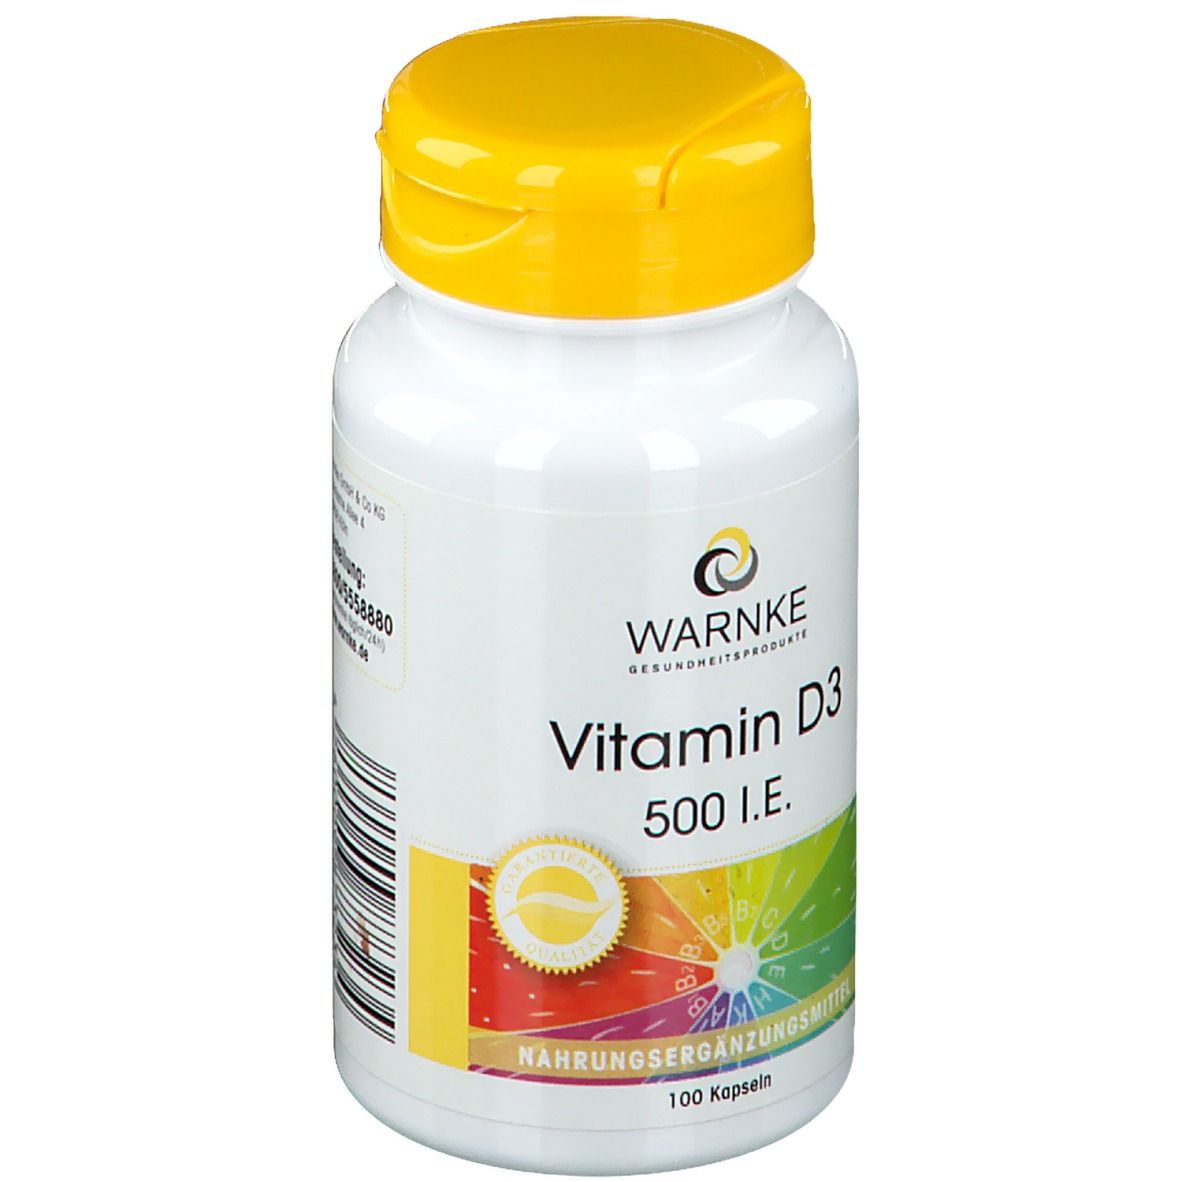 WARNKE Vitamin D3 500 I.E.